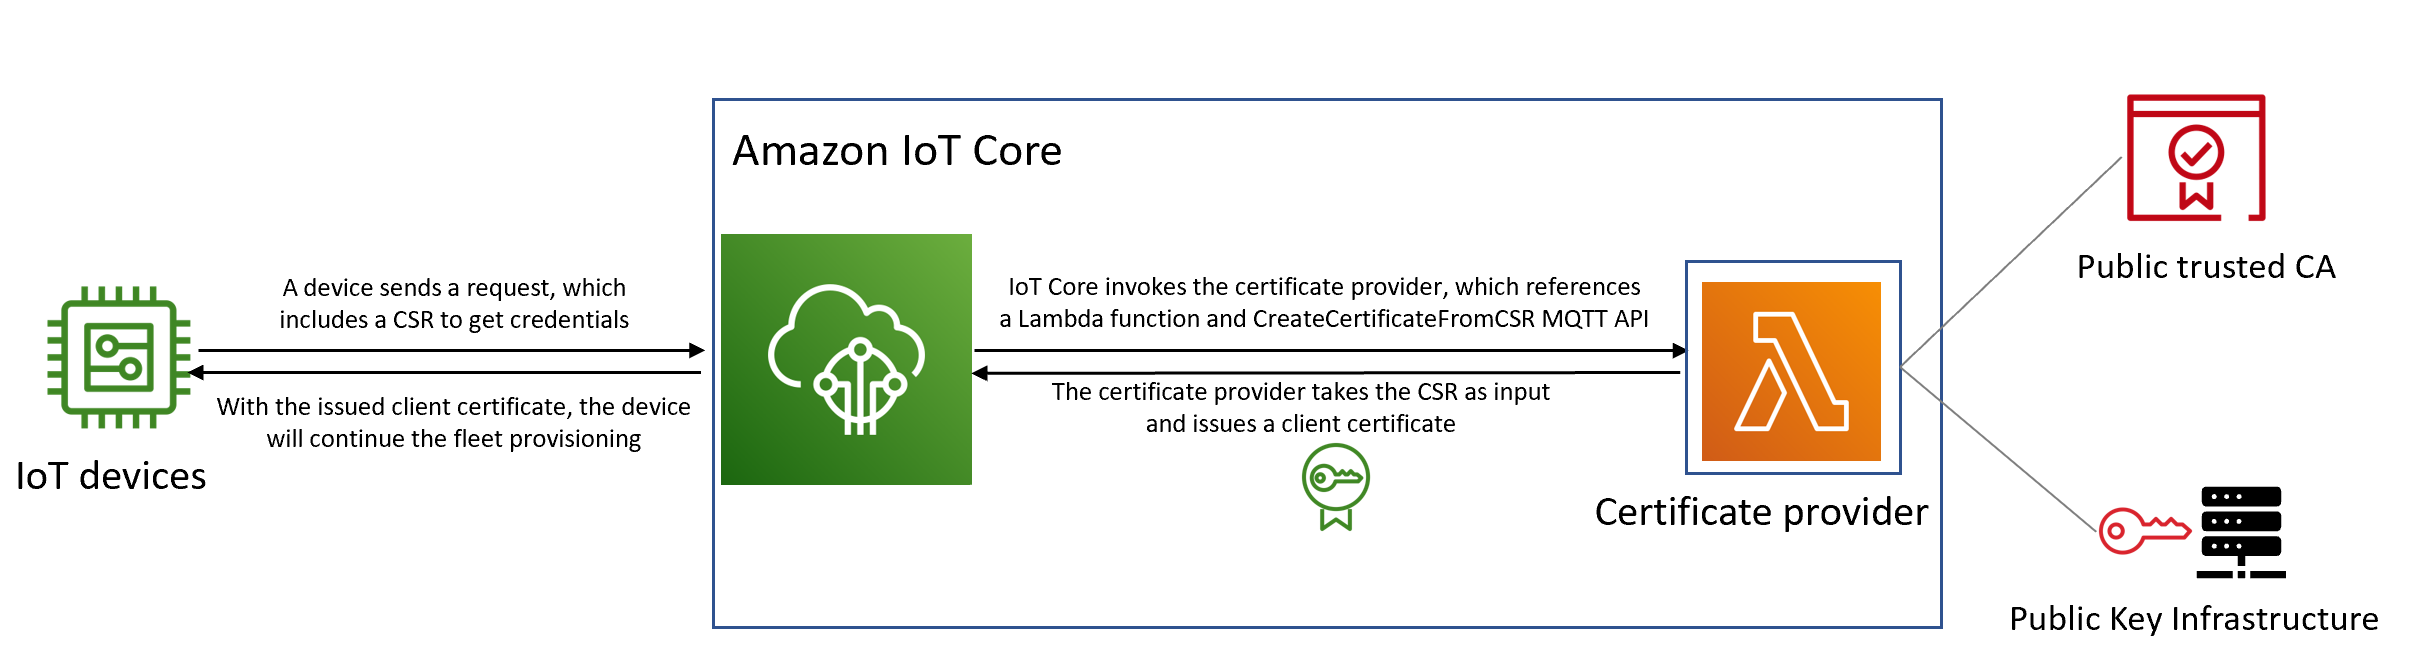 Amazon IoT Core 用于队列配置的证书提供商